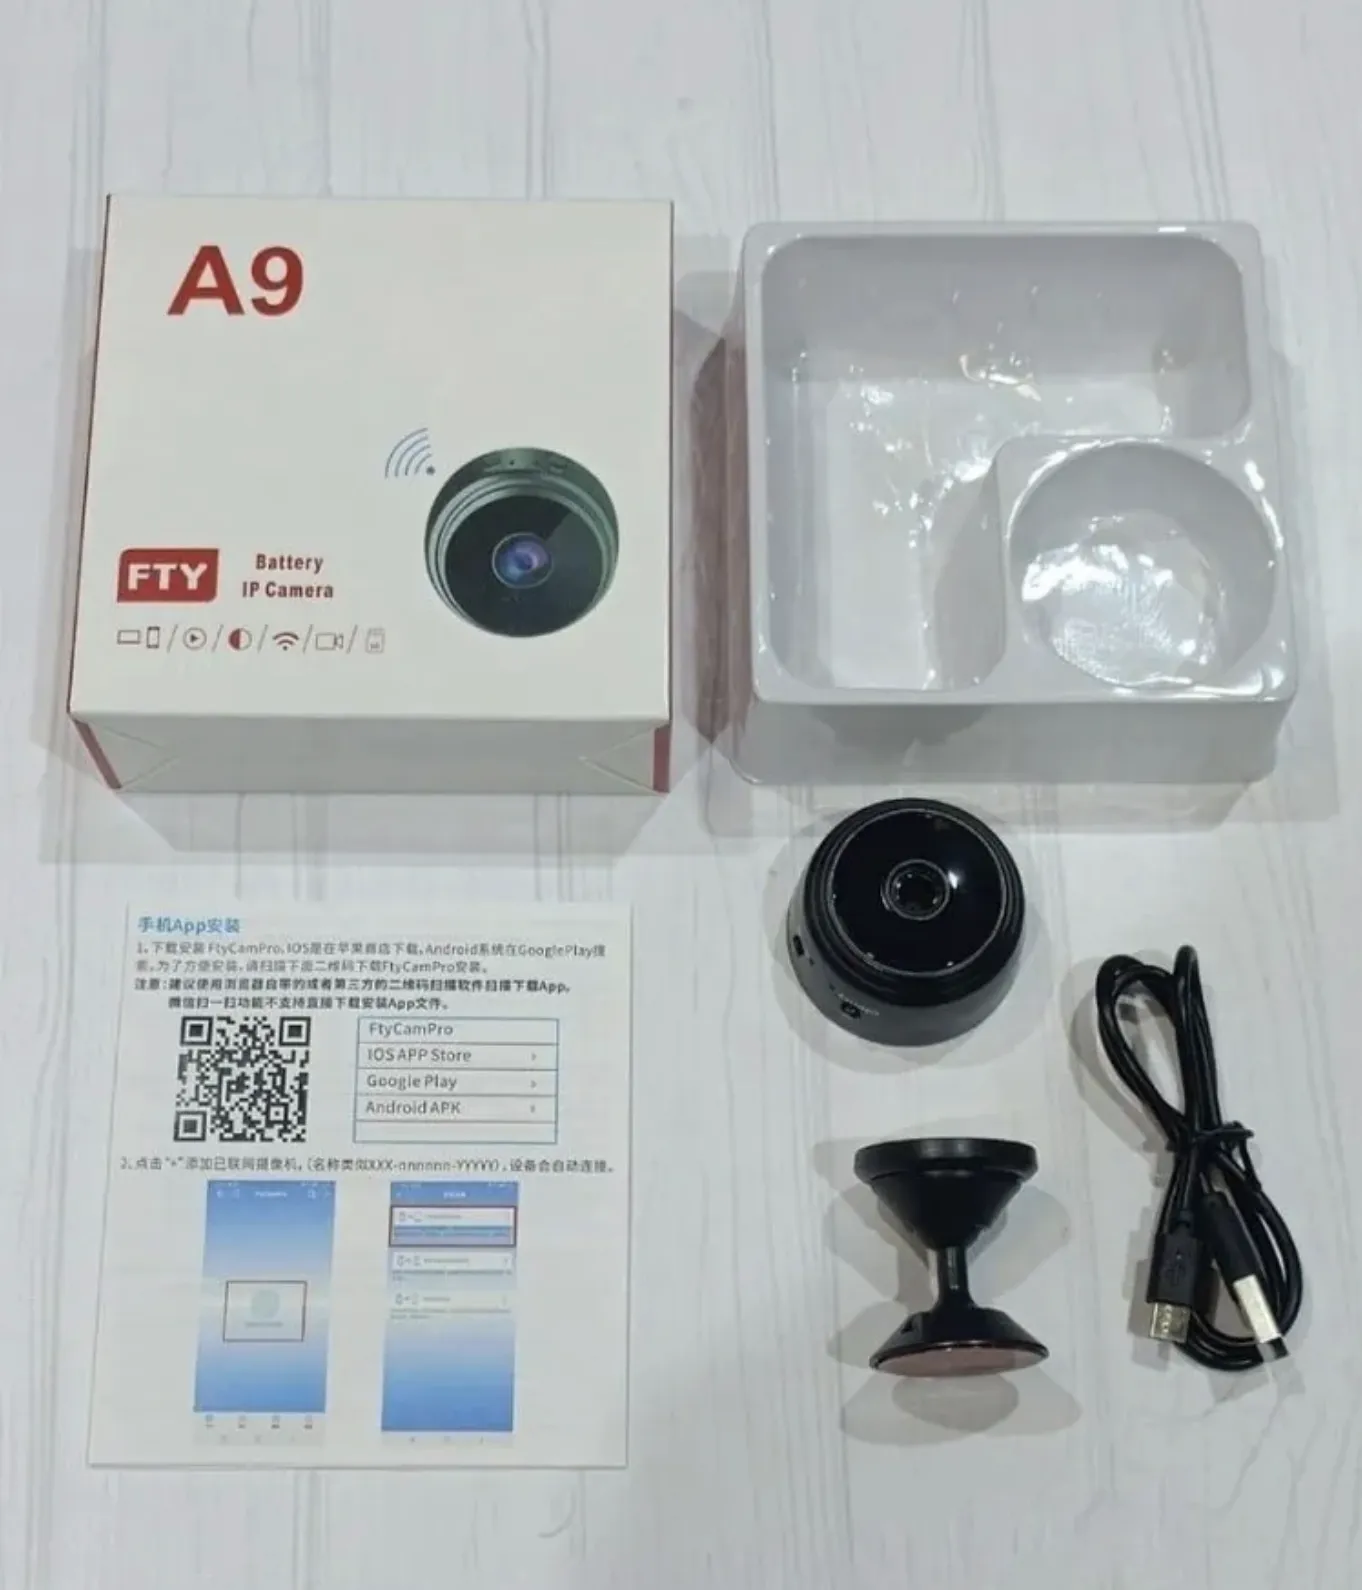 Беспроводная мини камера.Wi Fi smart camera для удаленного наблюдения дома через телефон. с датчиком движения, магнит крепление.#6